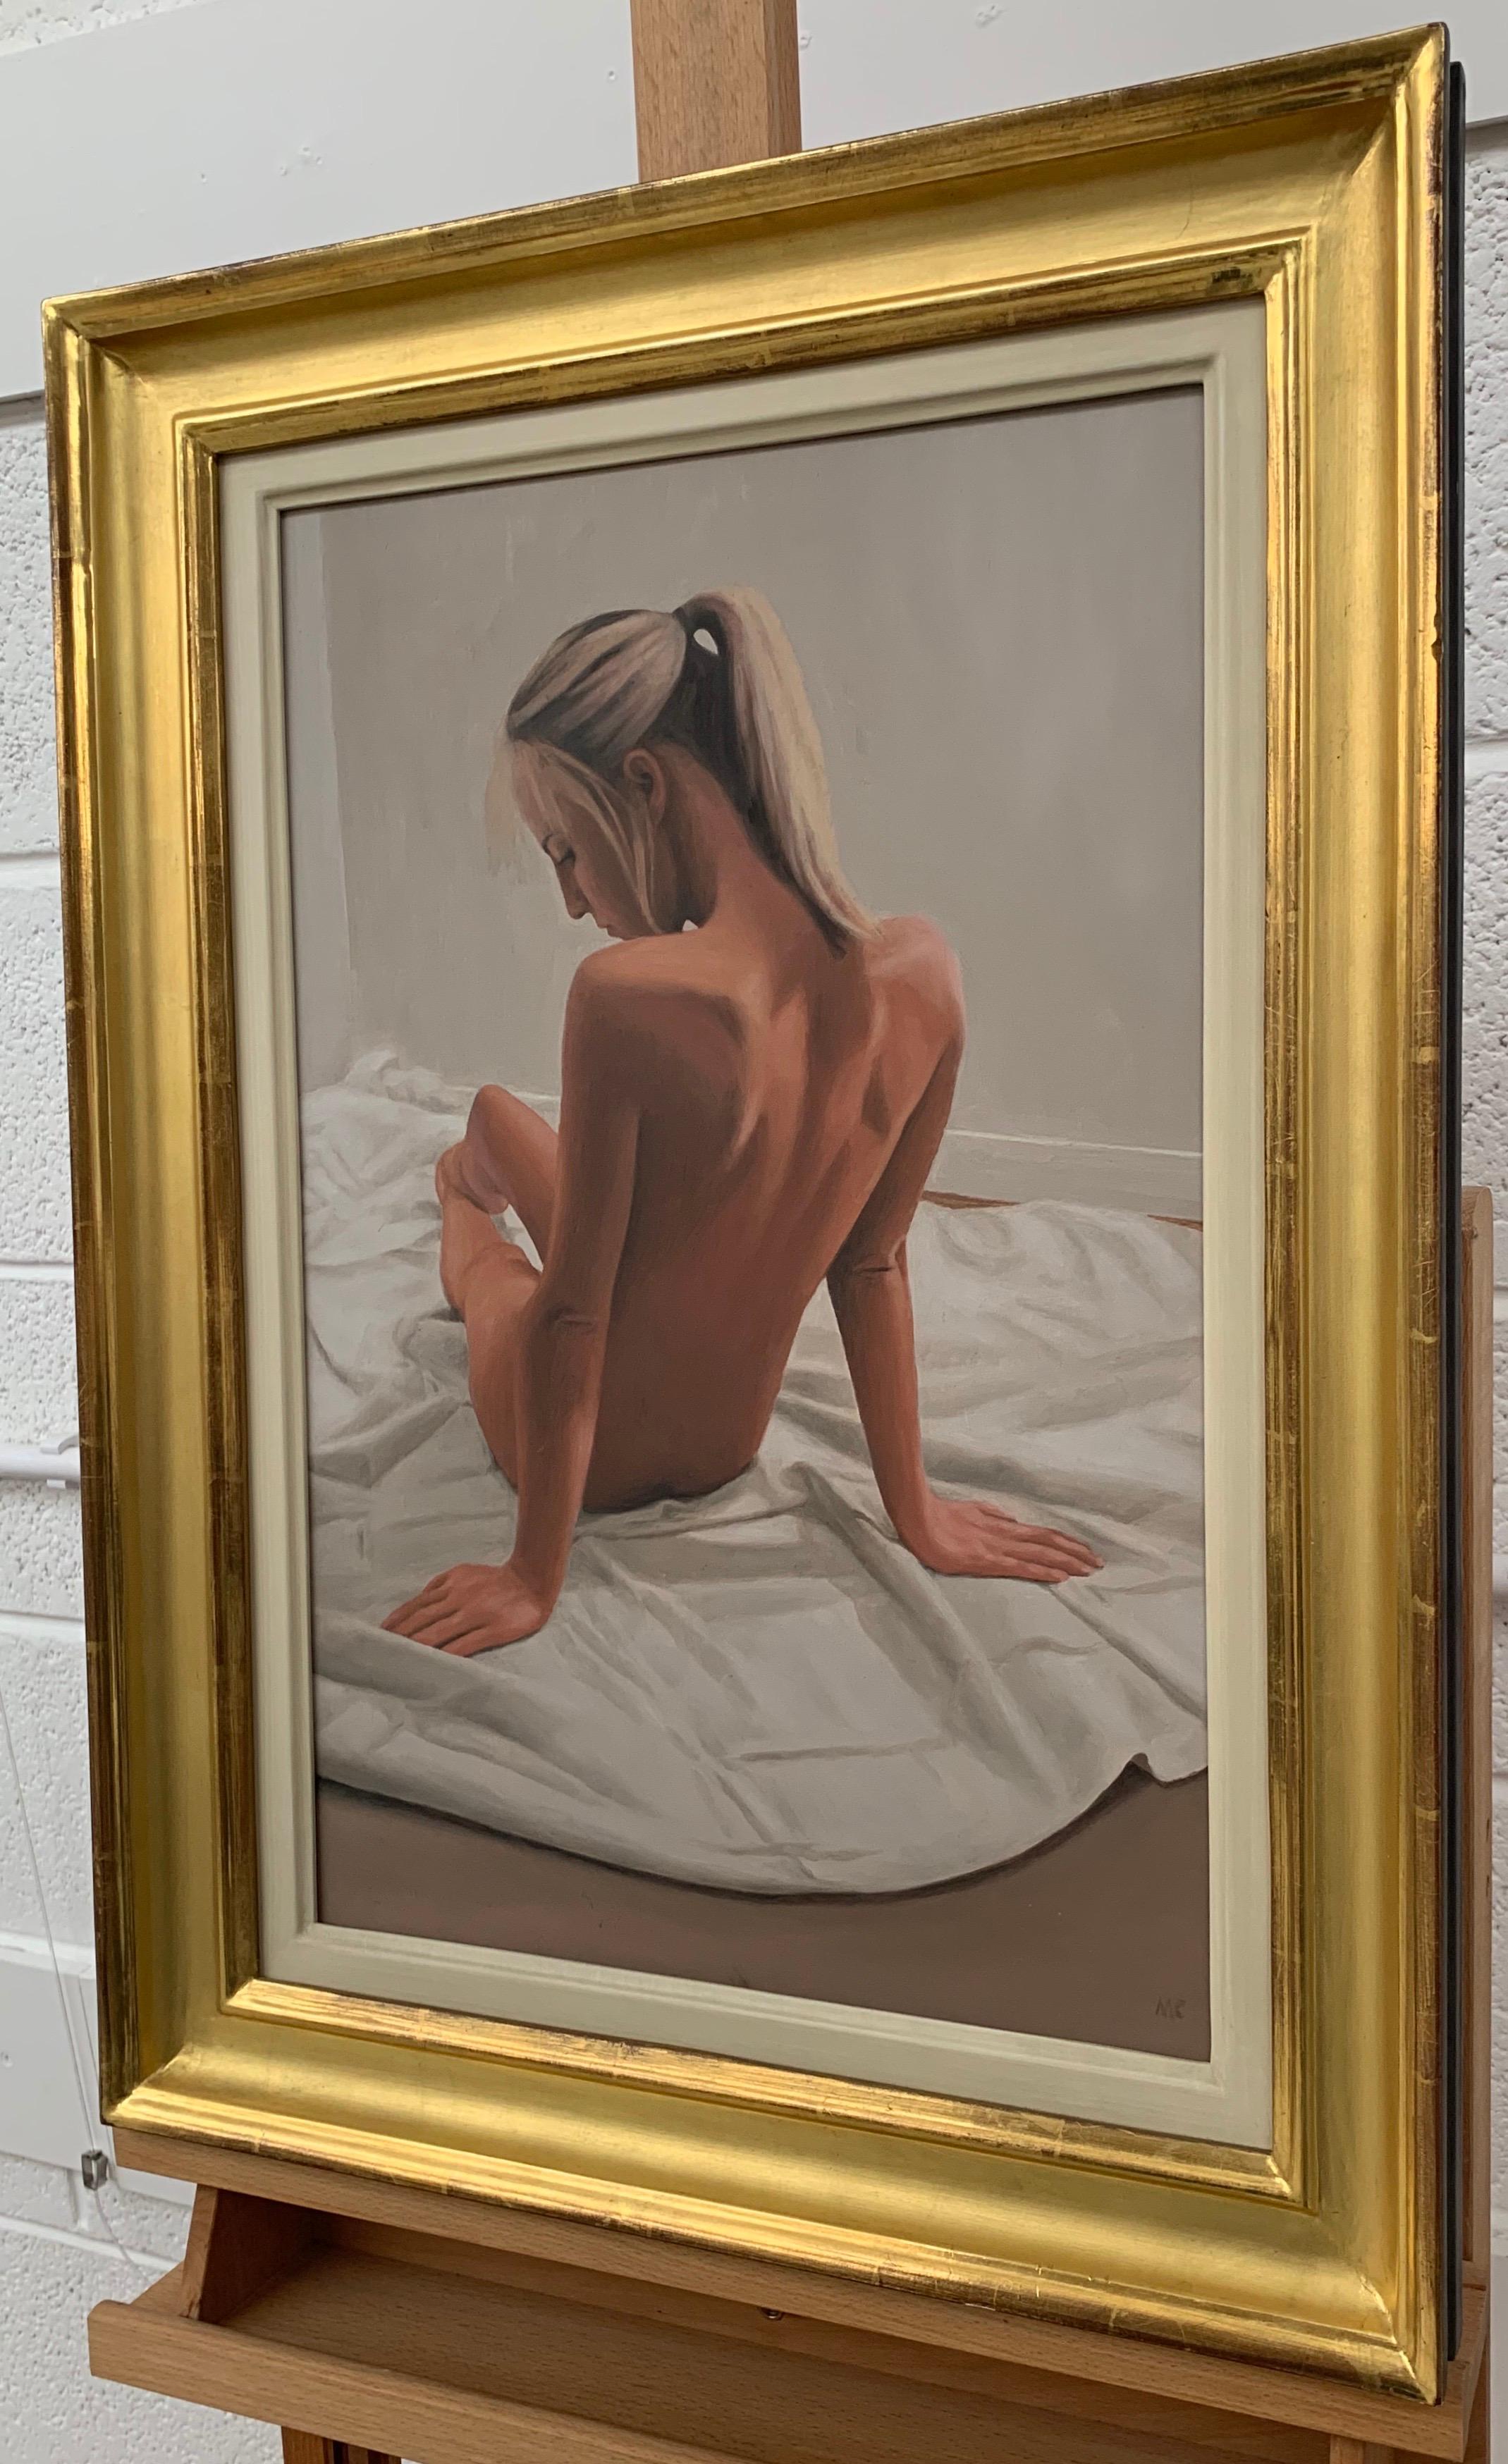 Peinture à l'huile d'un nu féminin assis par un artiste britannique contemporain - Marron Figurative Painting par Mark Clark